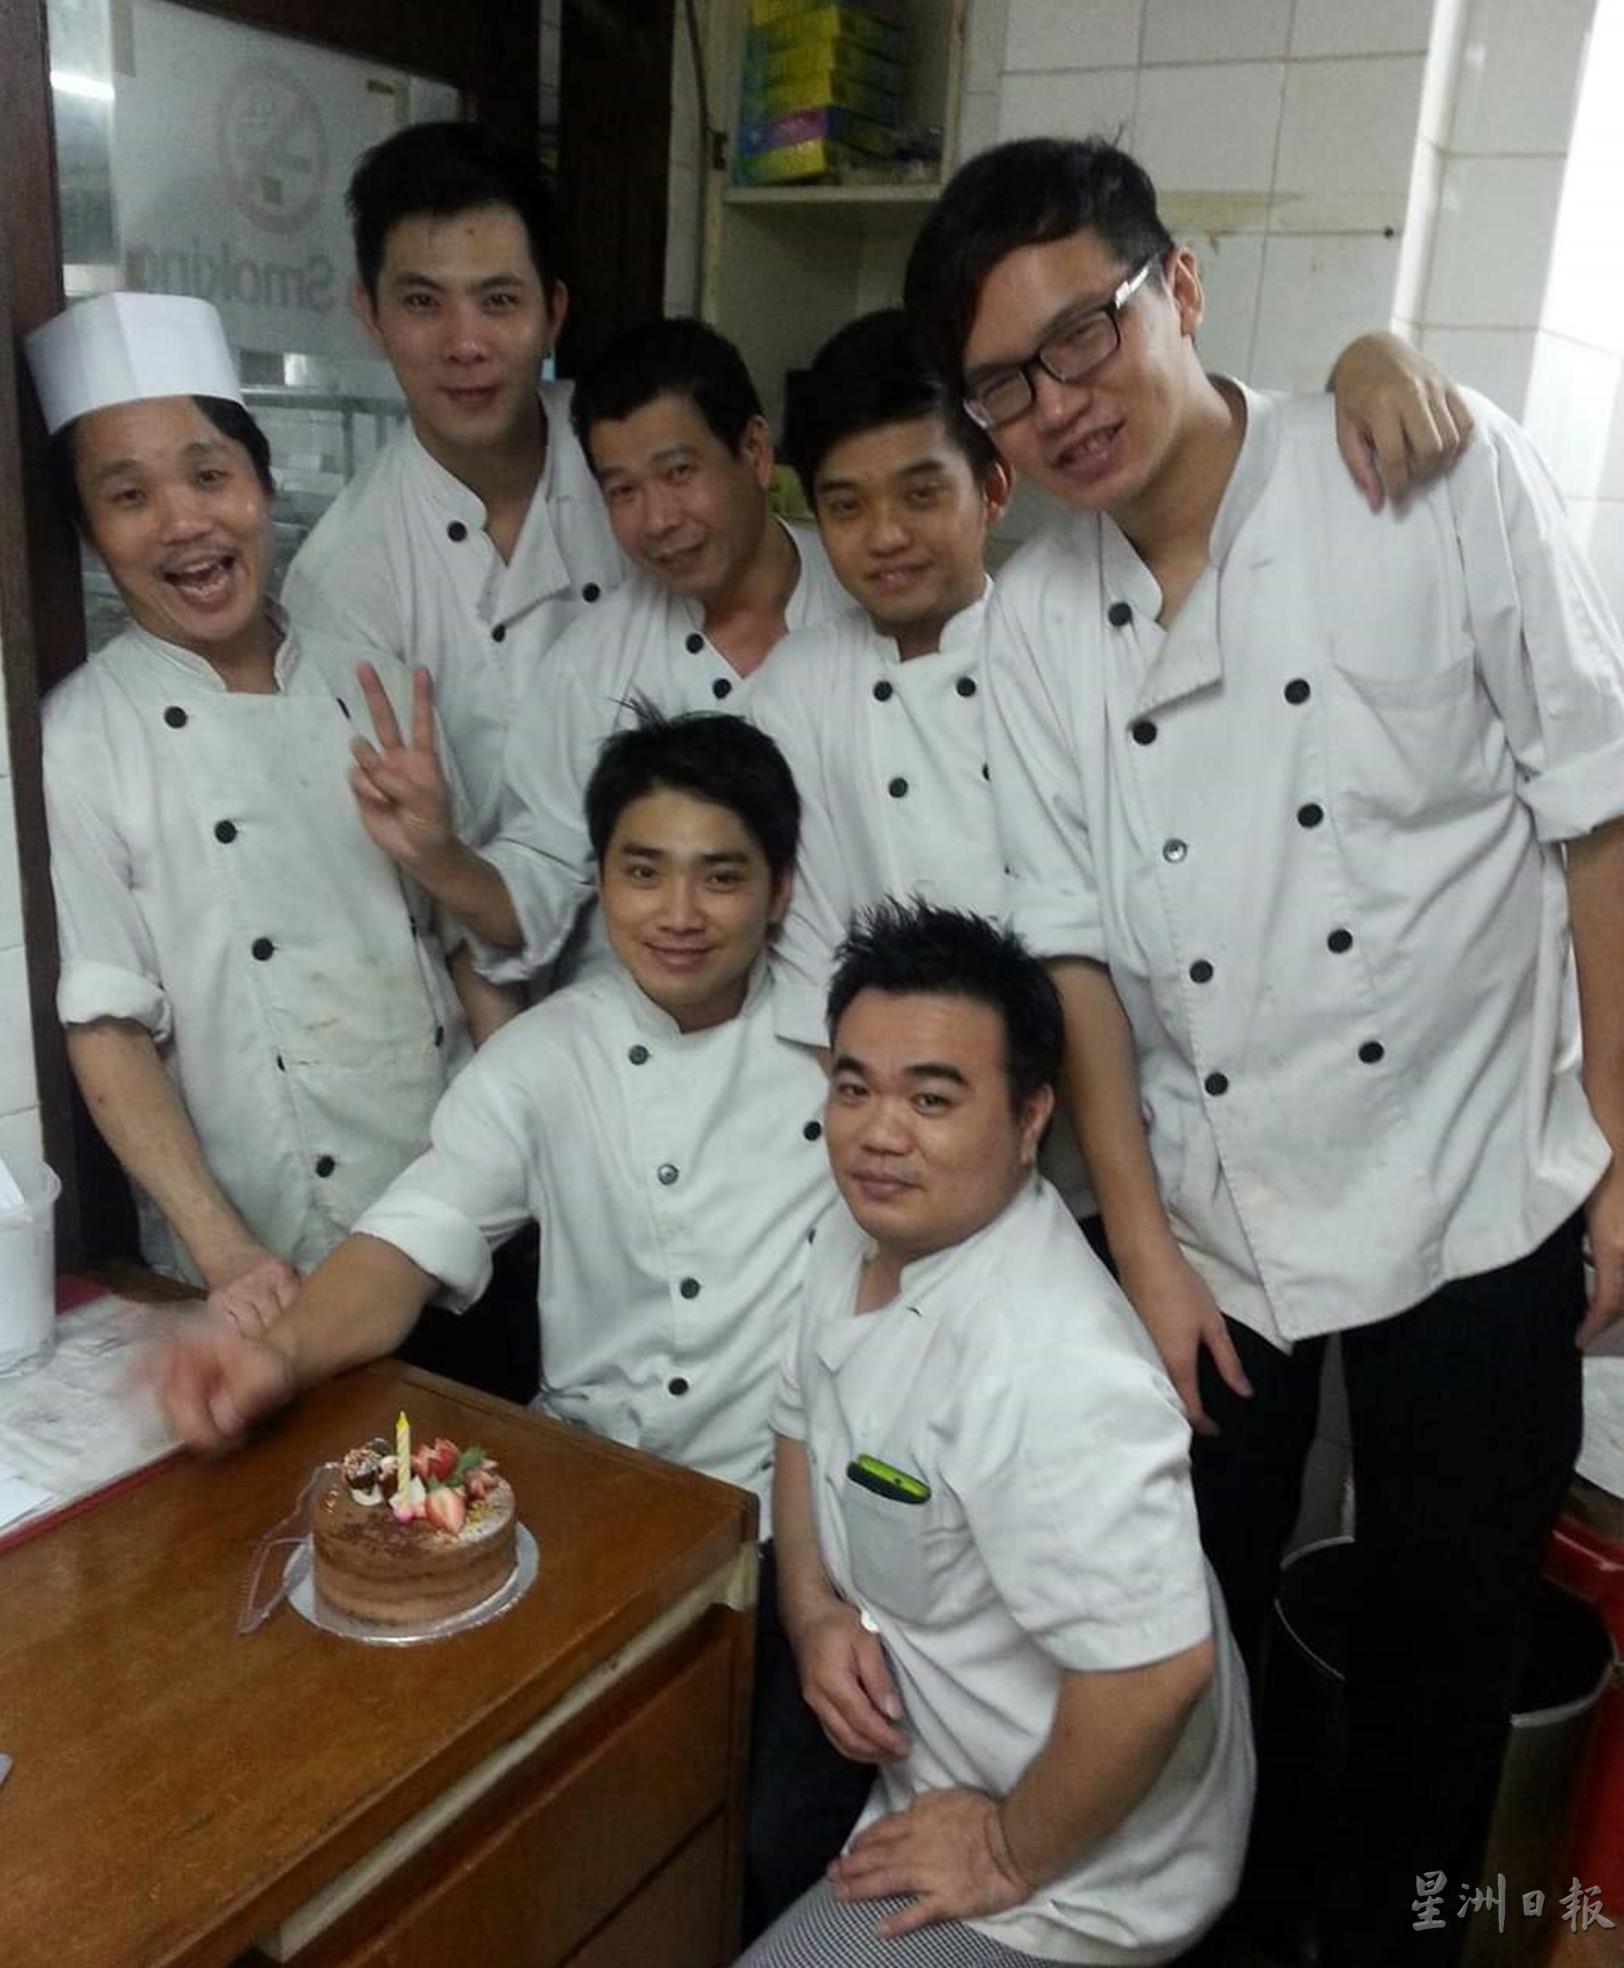 陈雄伟在新加坡任厨师时，同事为他庆生。

